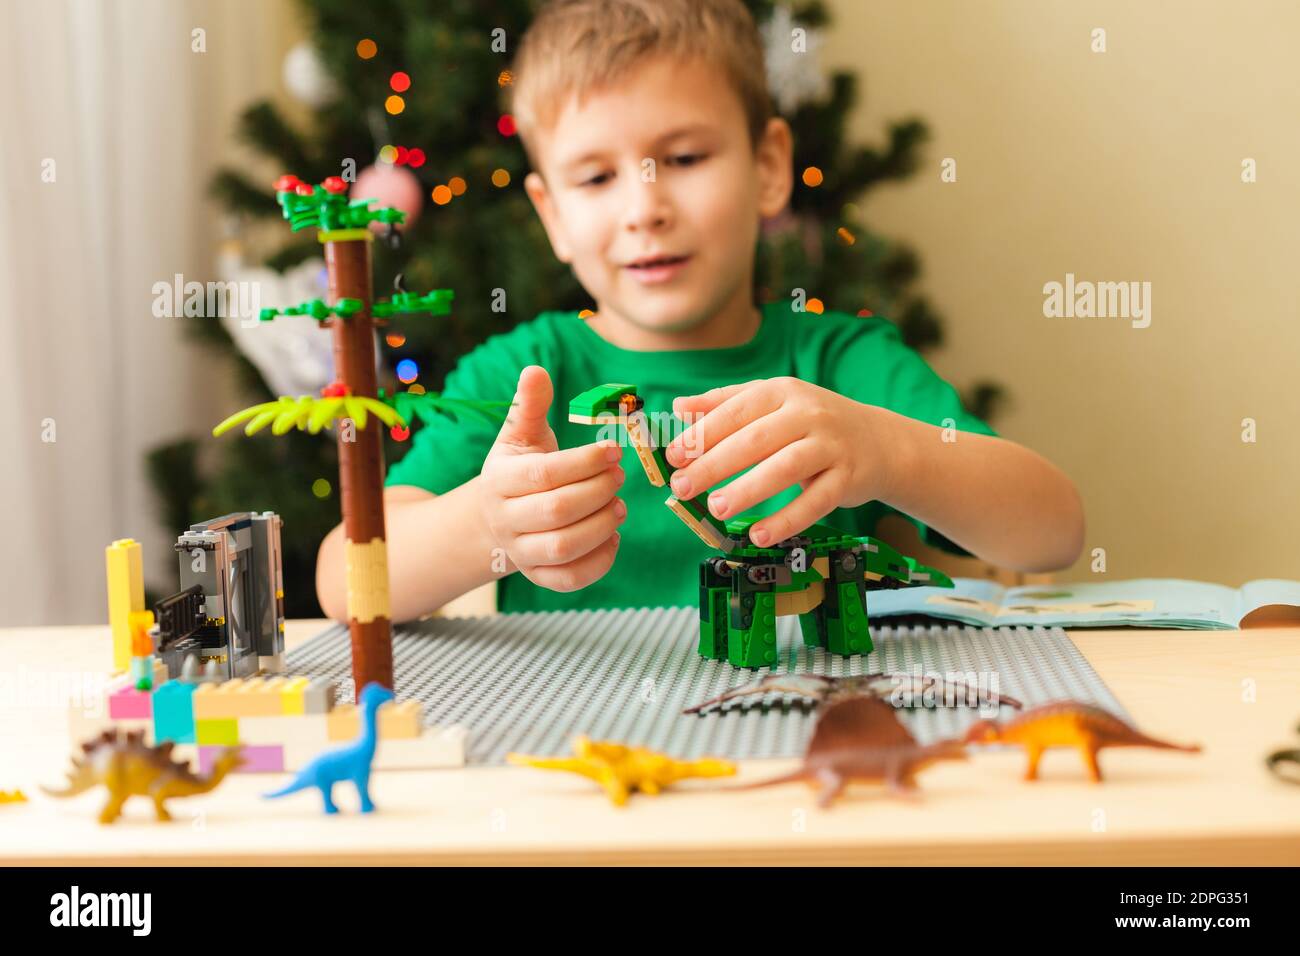 Bambini lego immagini e fotografie stock ad alta risoluzione - Alamy